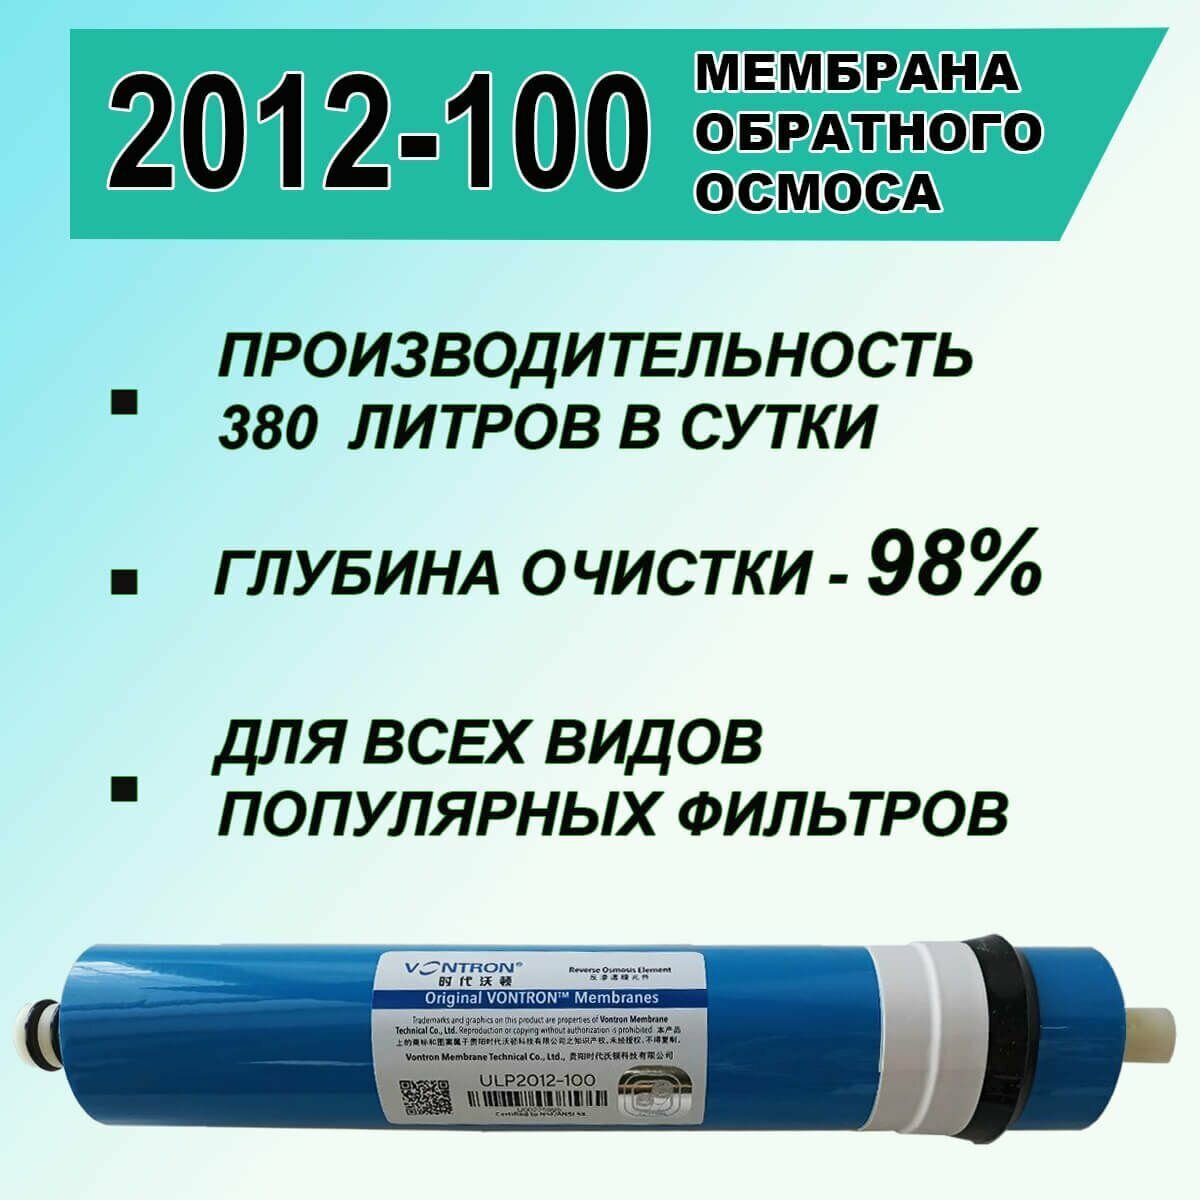 Мембрана обратноосмотическая ULP - 2012 - 100 GPD Vontron для обратного осмоса и фильтров, 380 литров в сутки